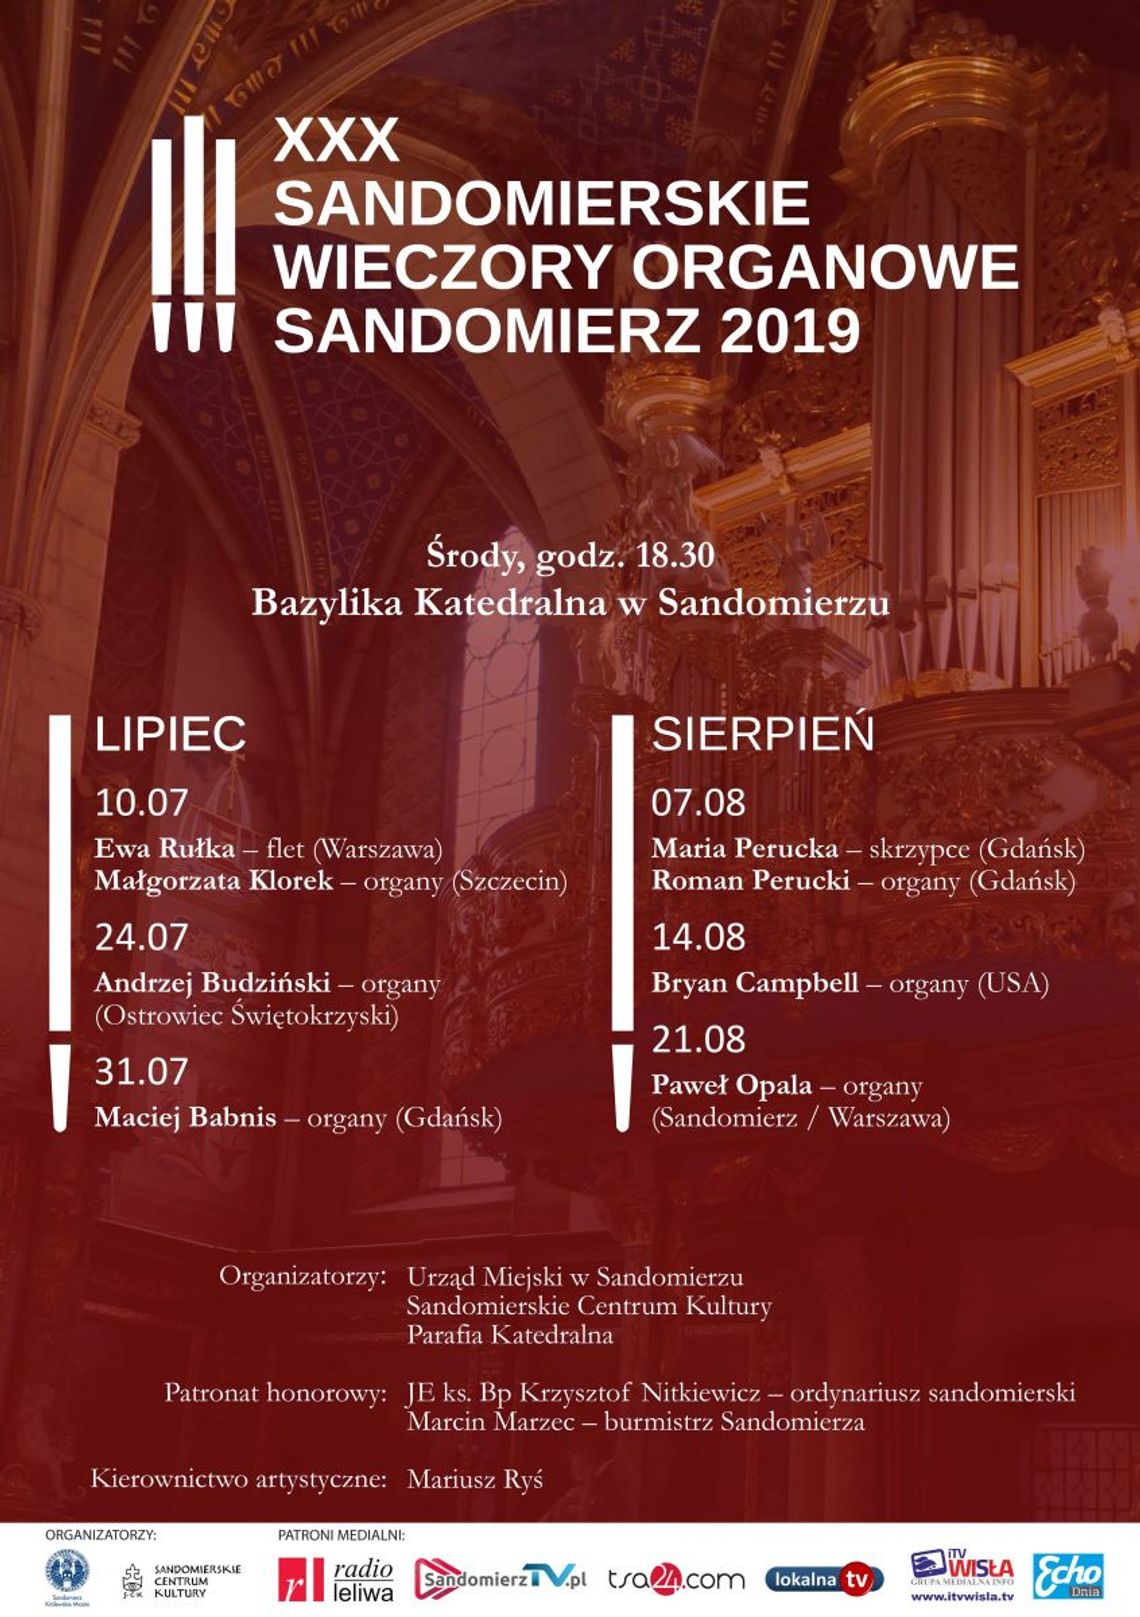 XXX Sandomierskie Wieczory Organowe Sandomierz 2019